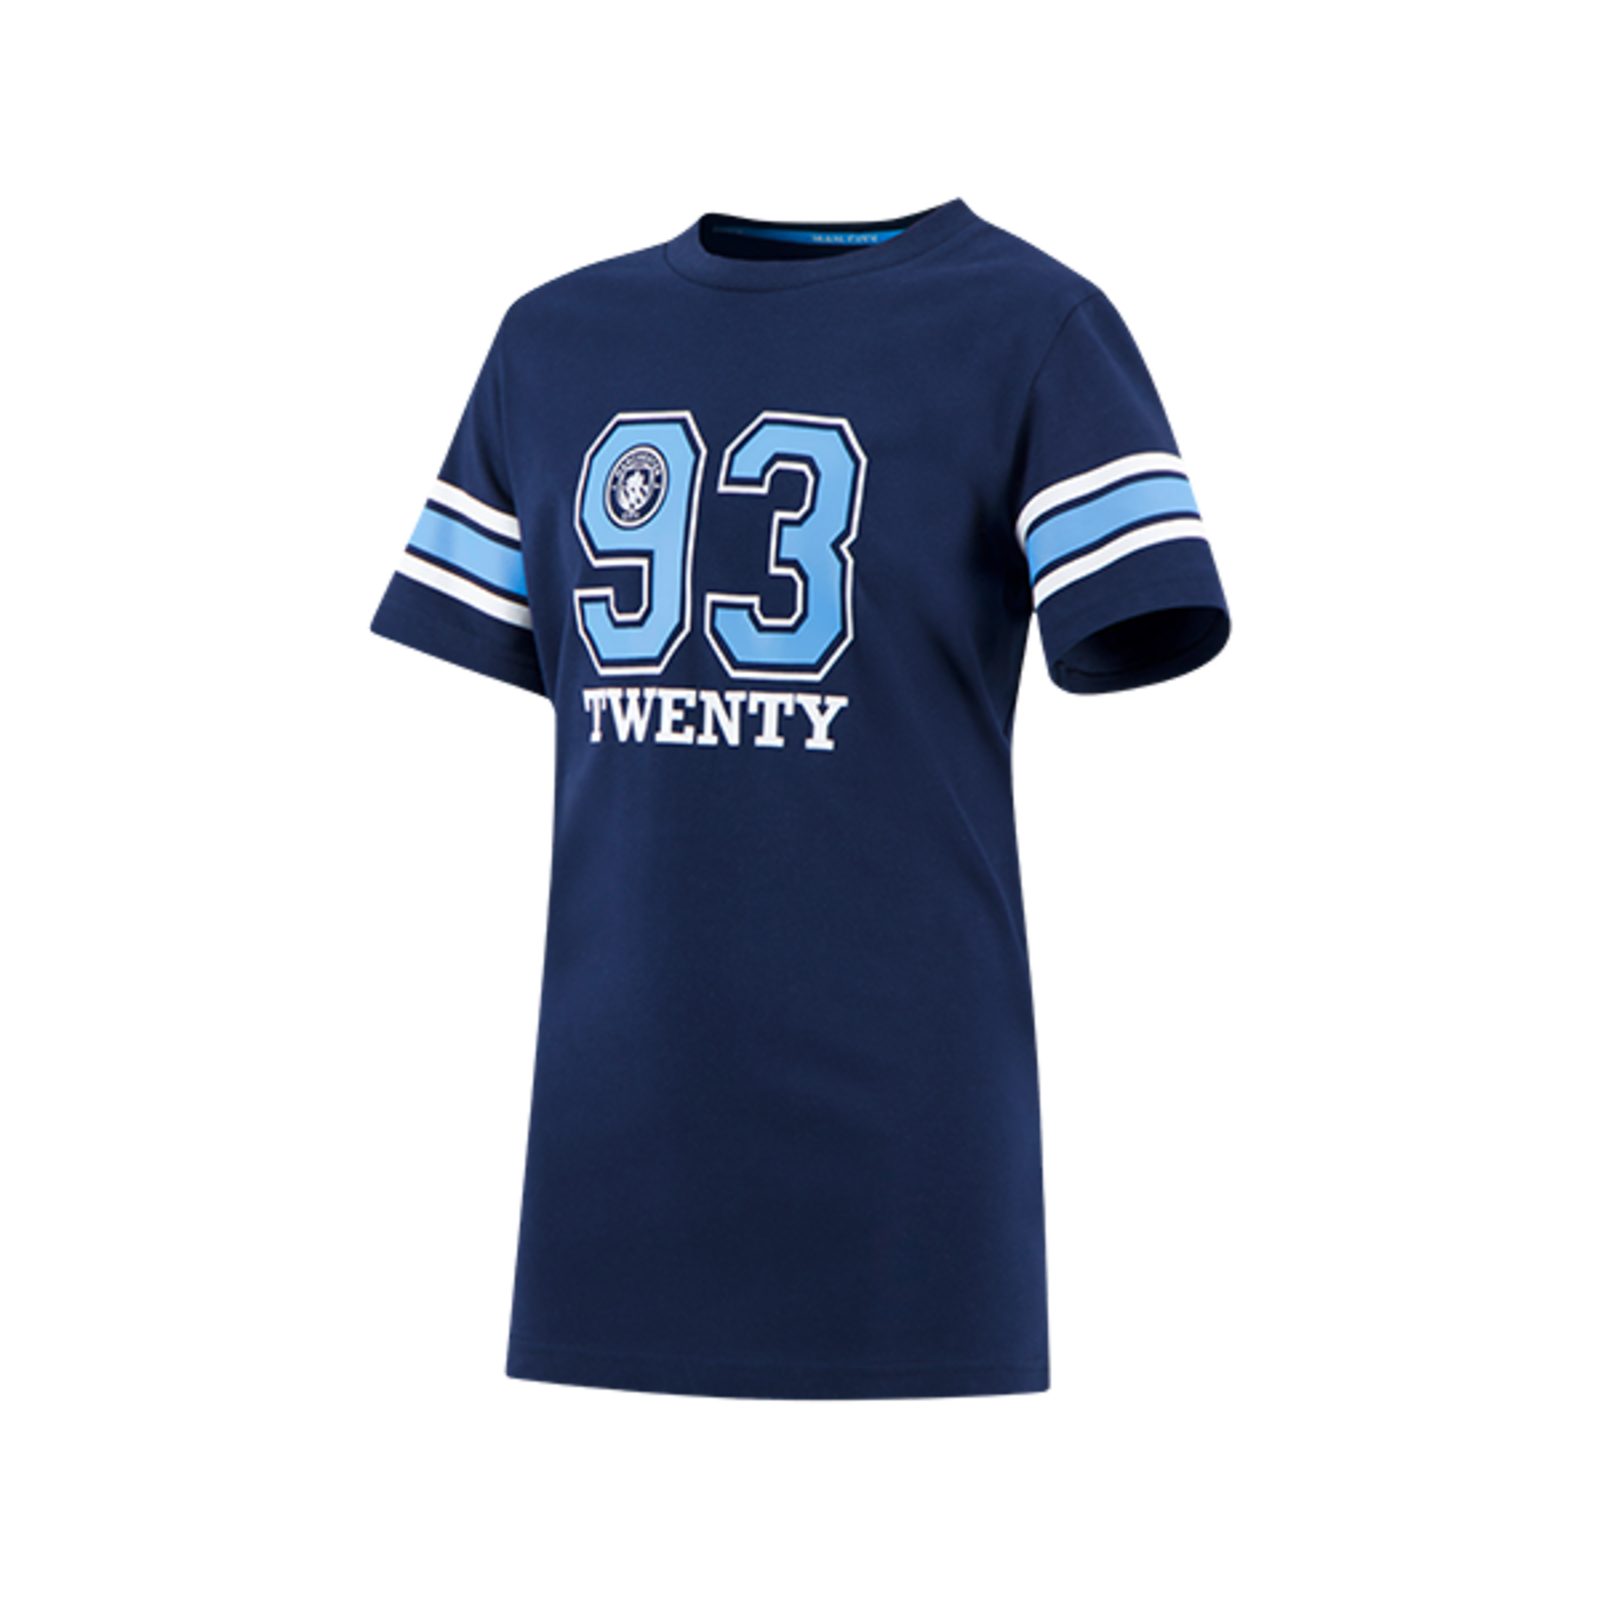 Camiseta universitaria infantil del Manchester City 93:20